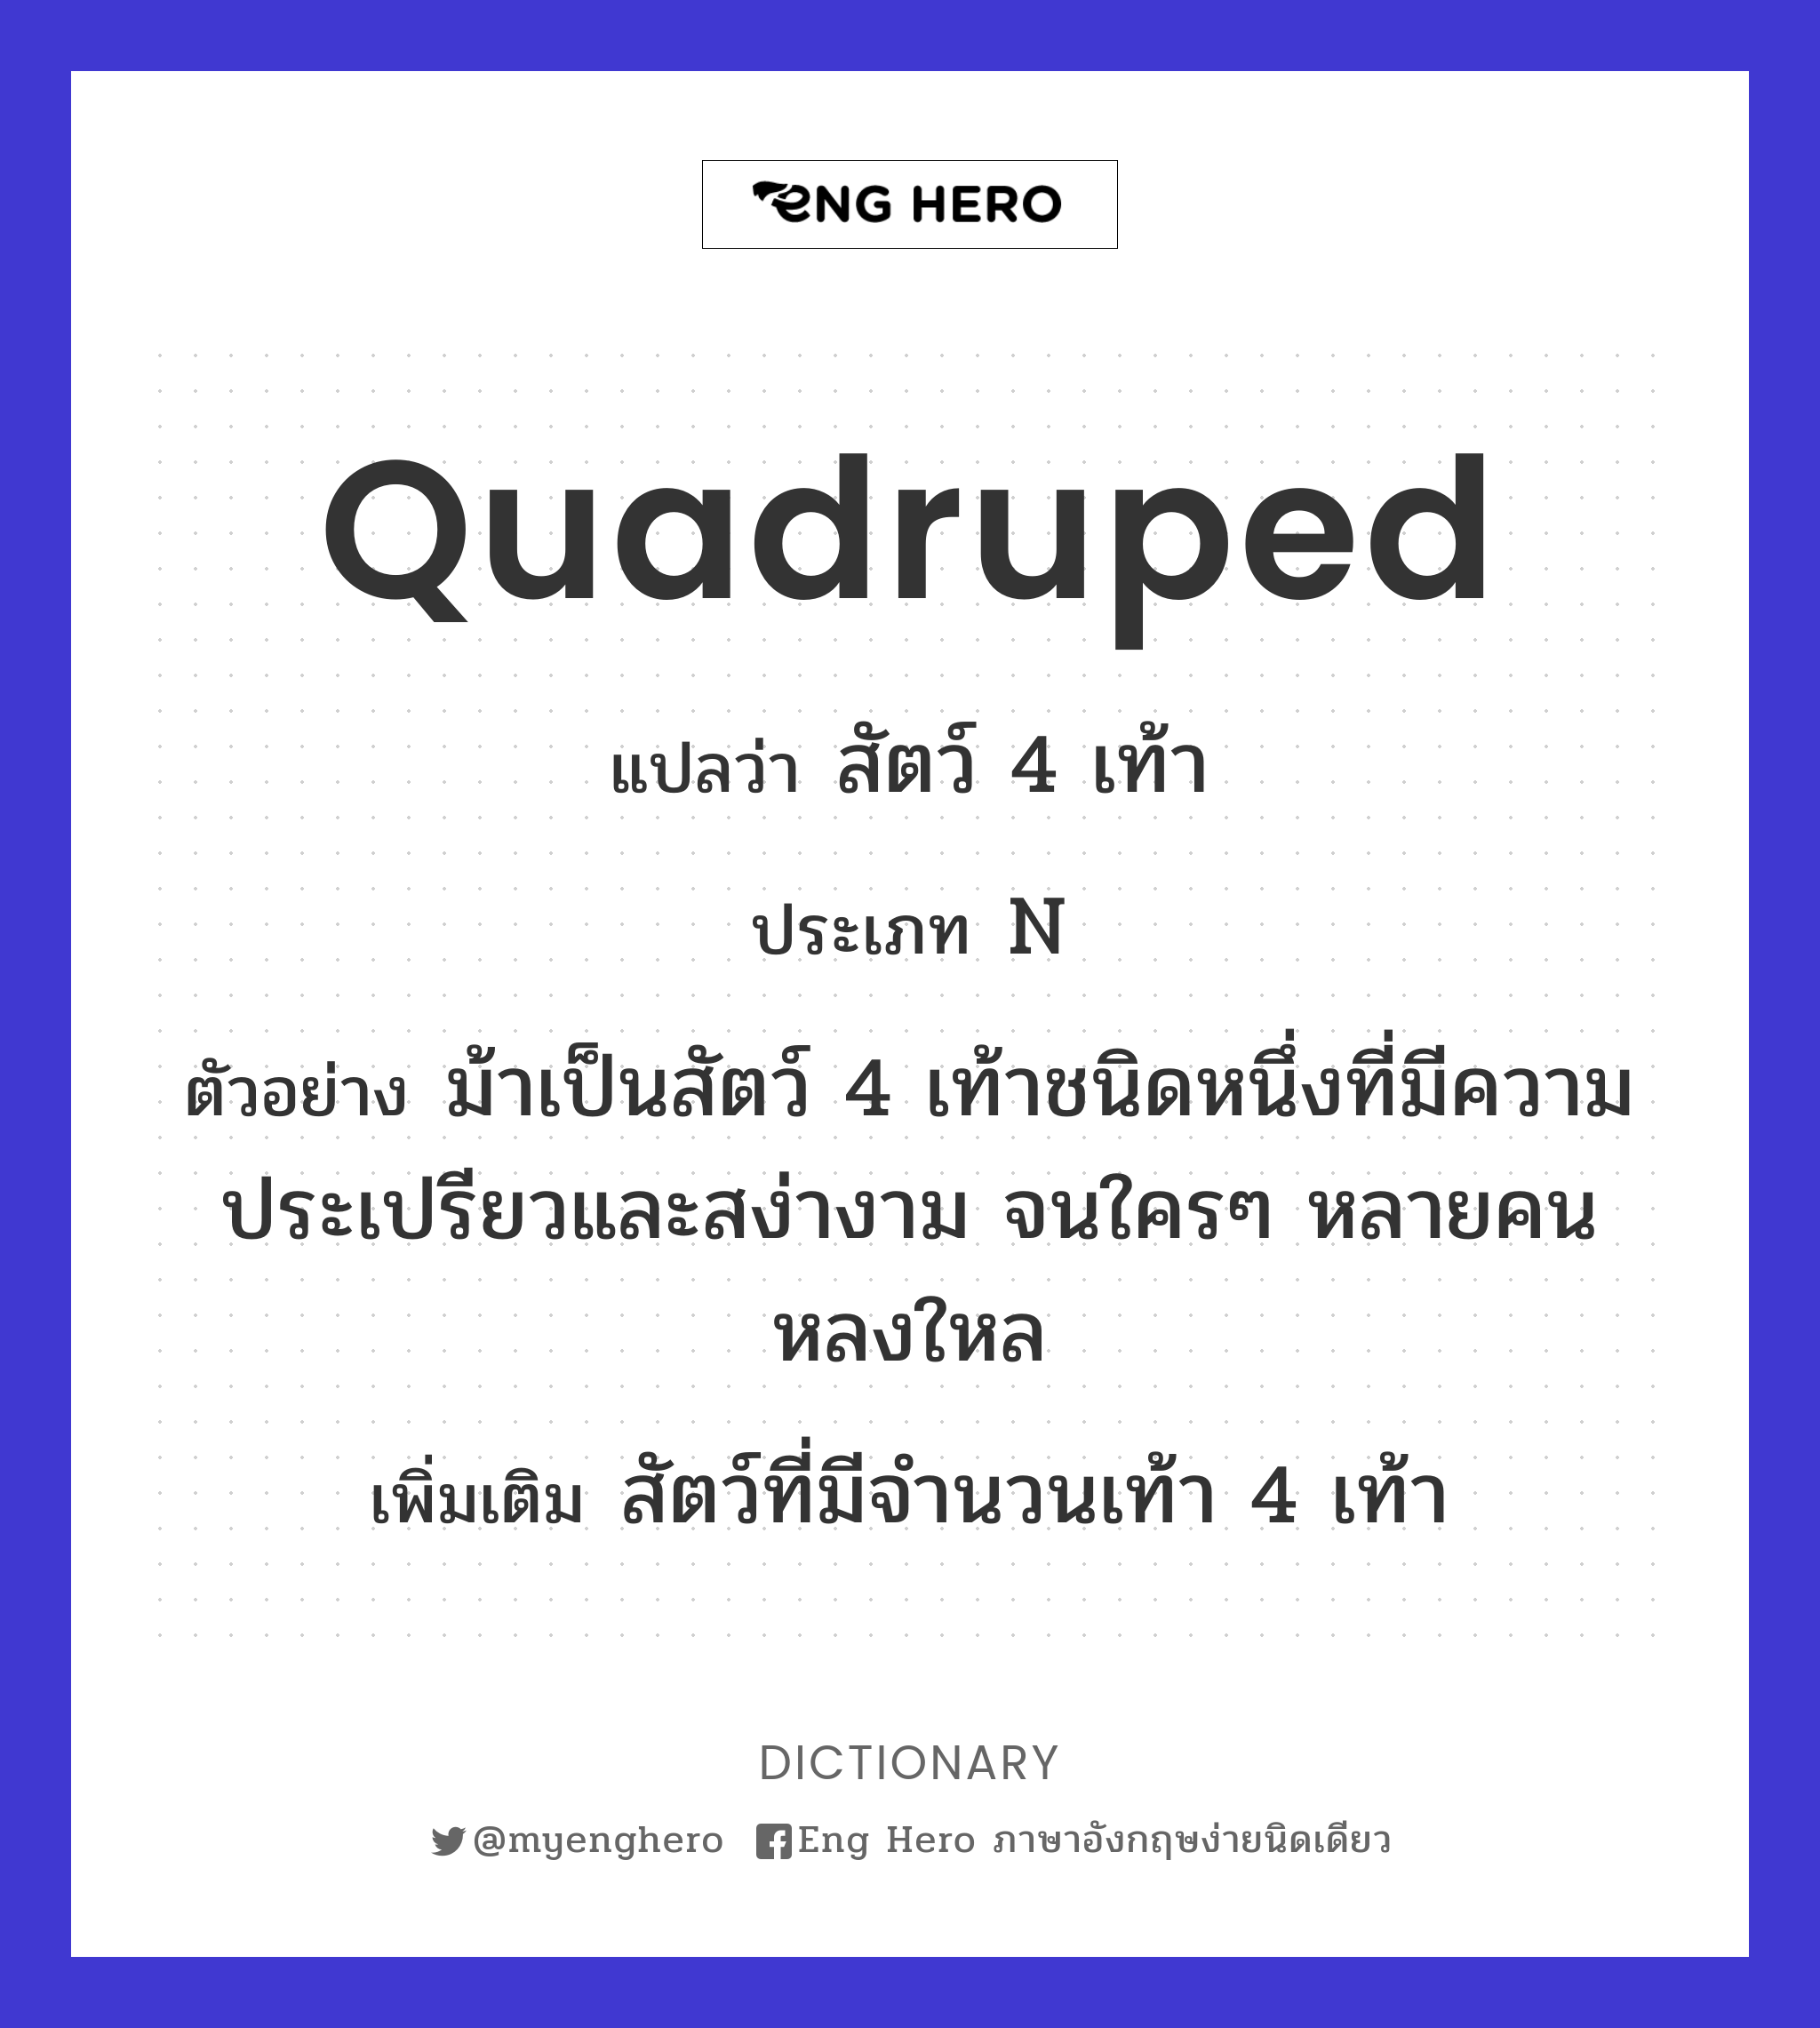 quadruped